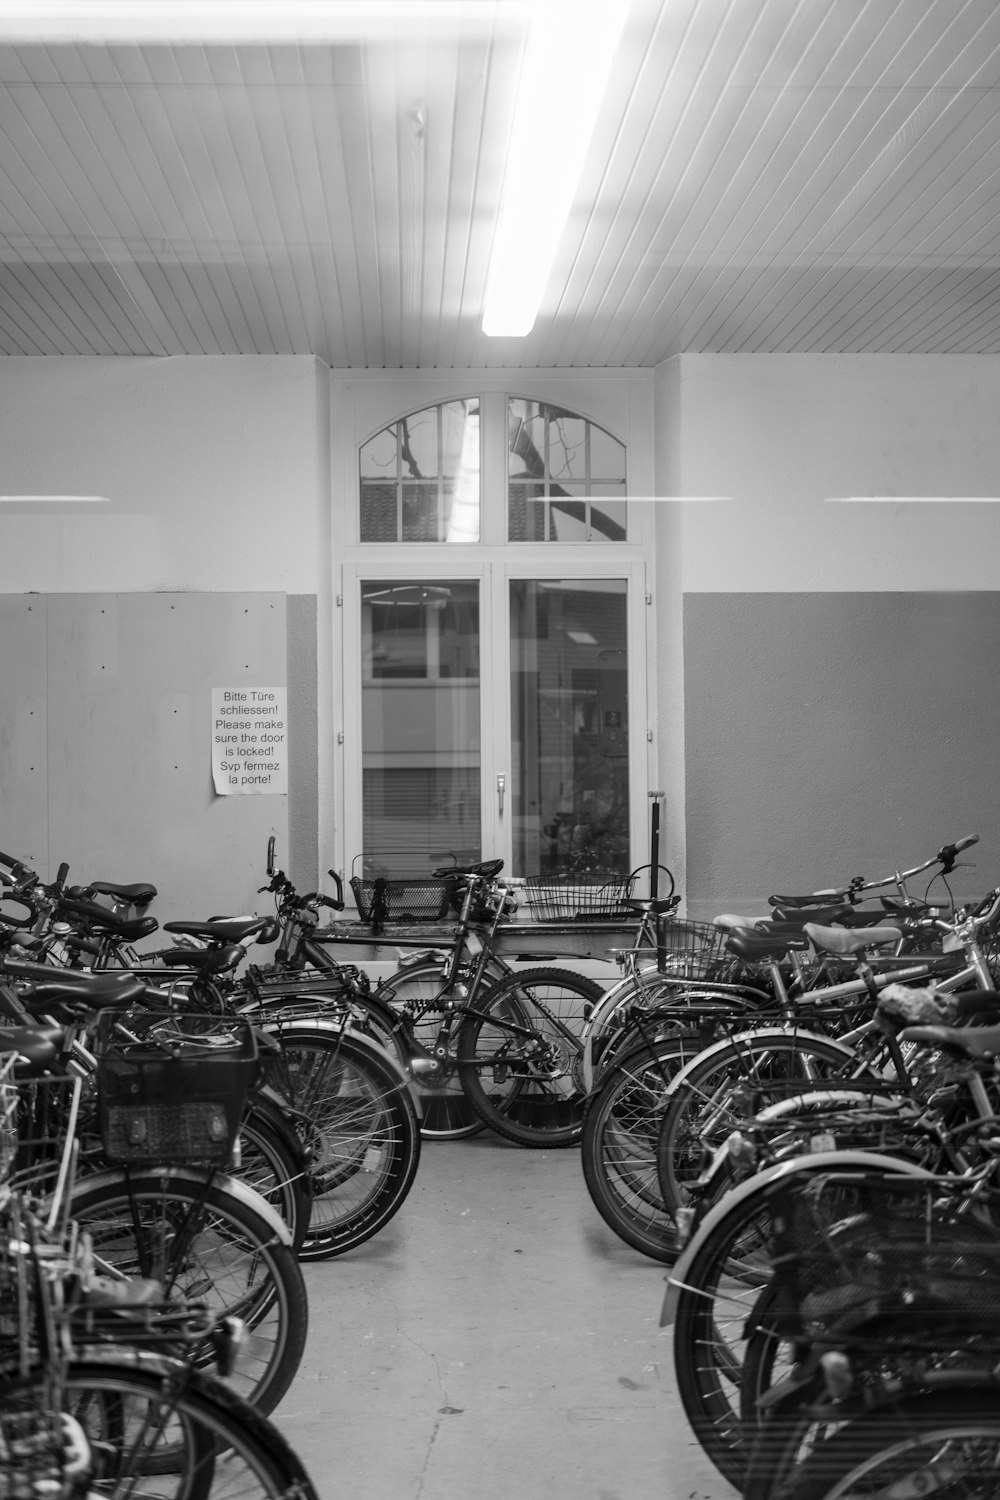 나란히 주차된 많은 자전거로 가득 찬 방